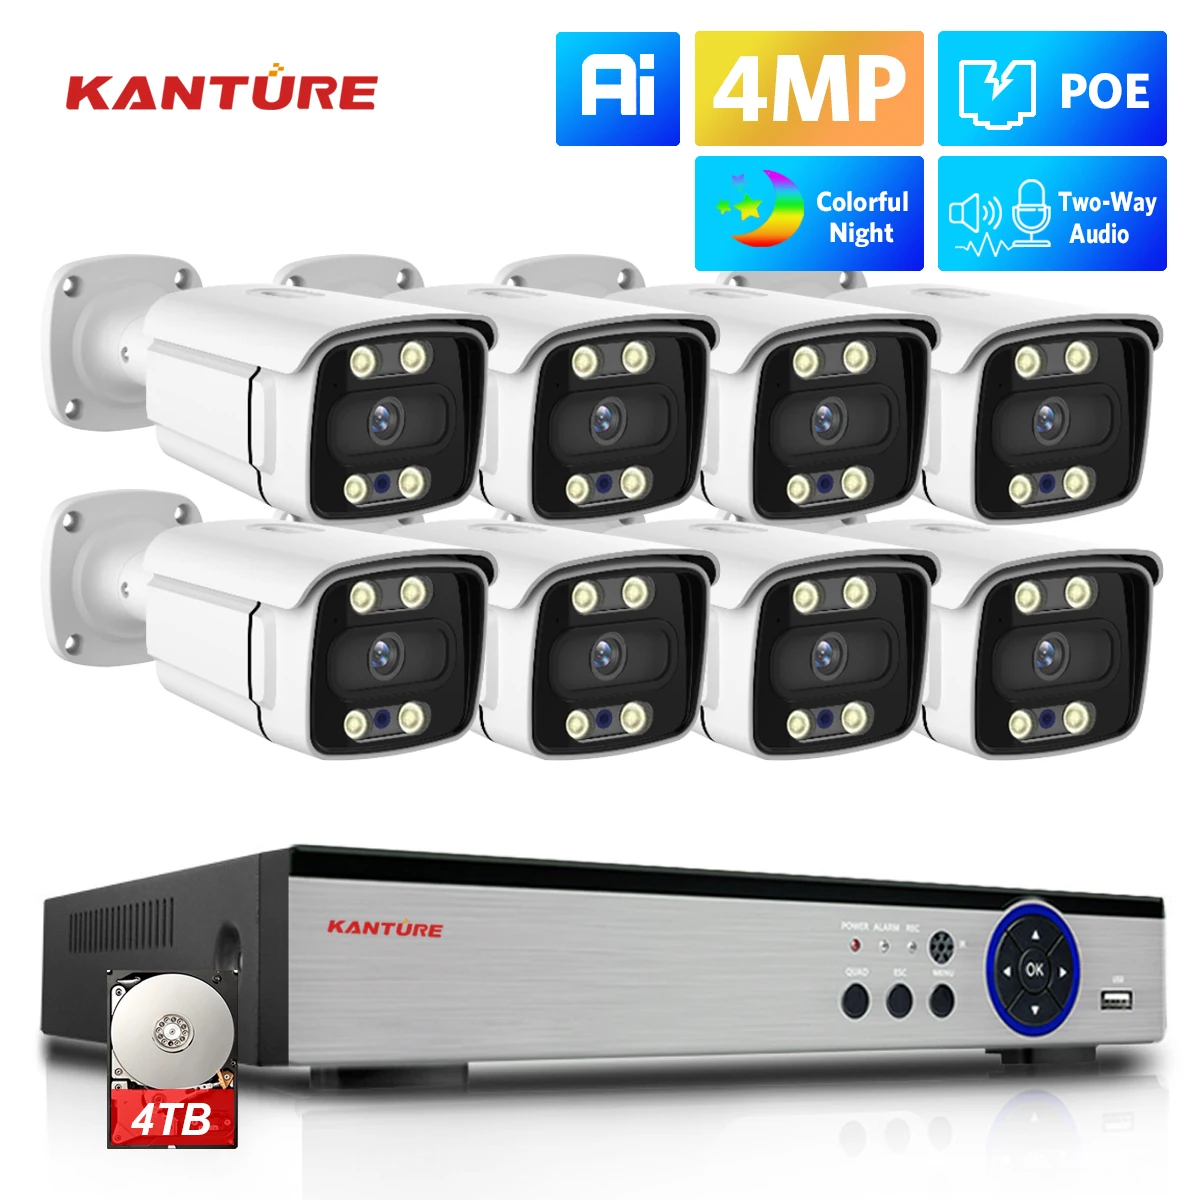 KANTURE 8CH 4K CCTV POE NVR 4MP Ai Human Detect Двухсторонний Аудио Цветной Ночной Фотоаппарат Безопасности Система Наружного Видеонаблюдения Комплект